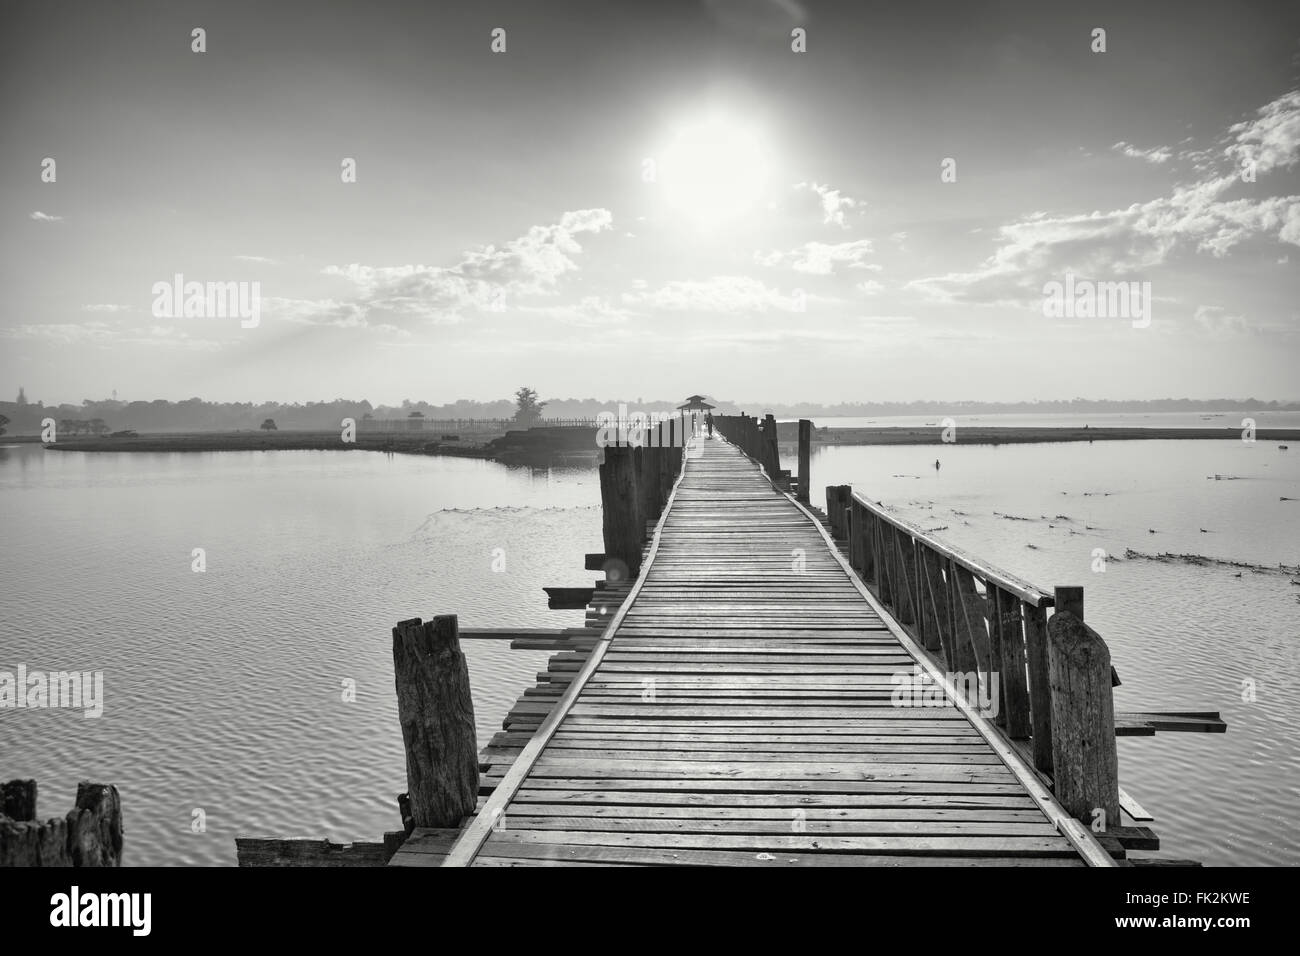 Images de paysage noir et blanc du pont de teck U Bein sur le lac Taungthaman, Amarapura, Myanmar Banque D'Images